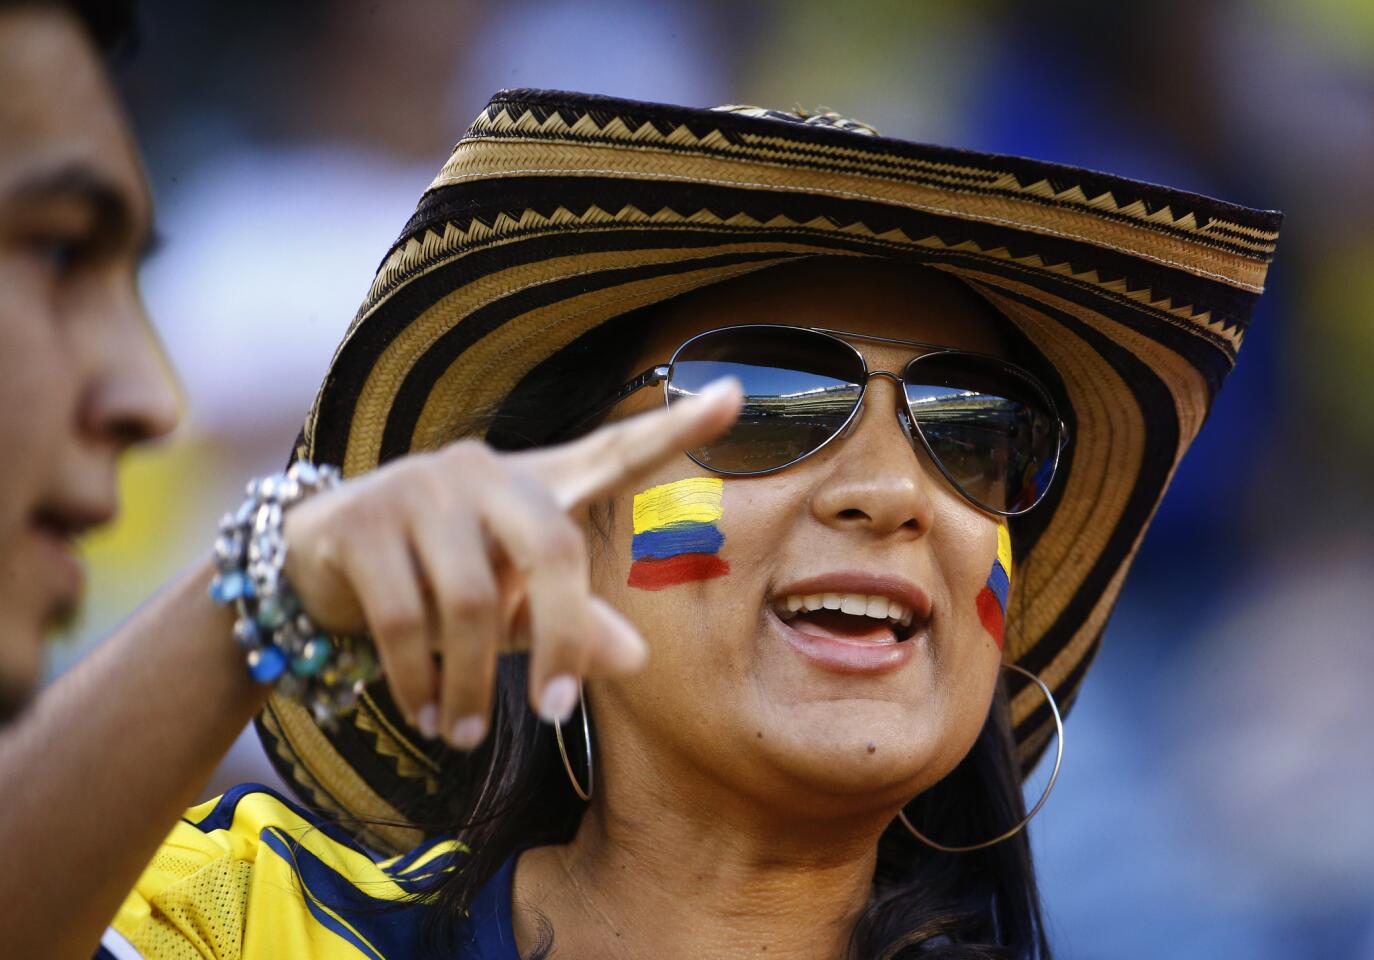 Colombia vs. Perú